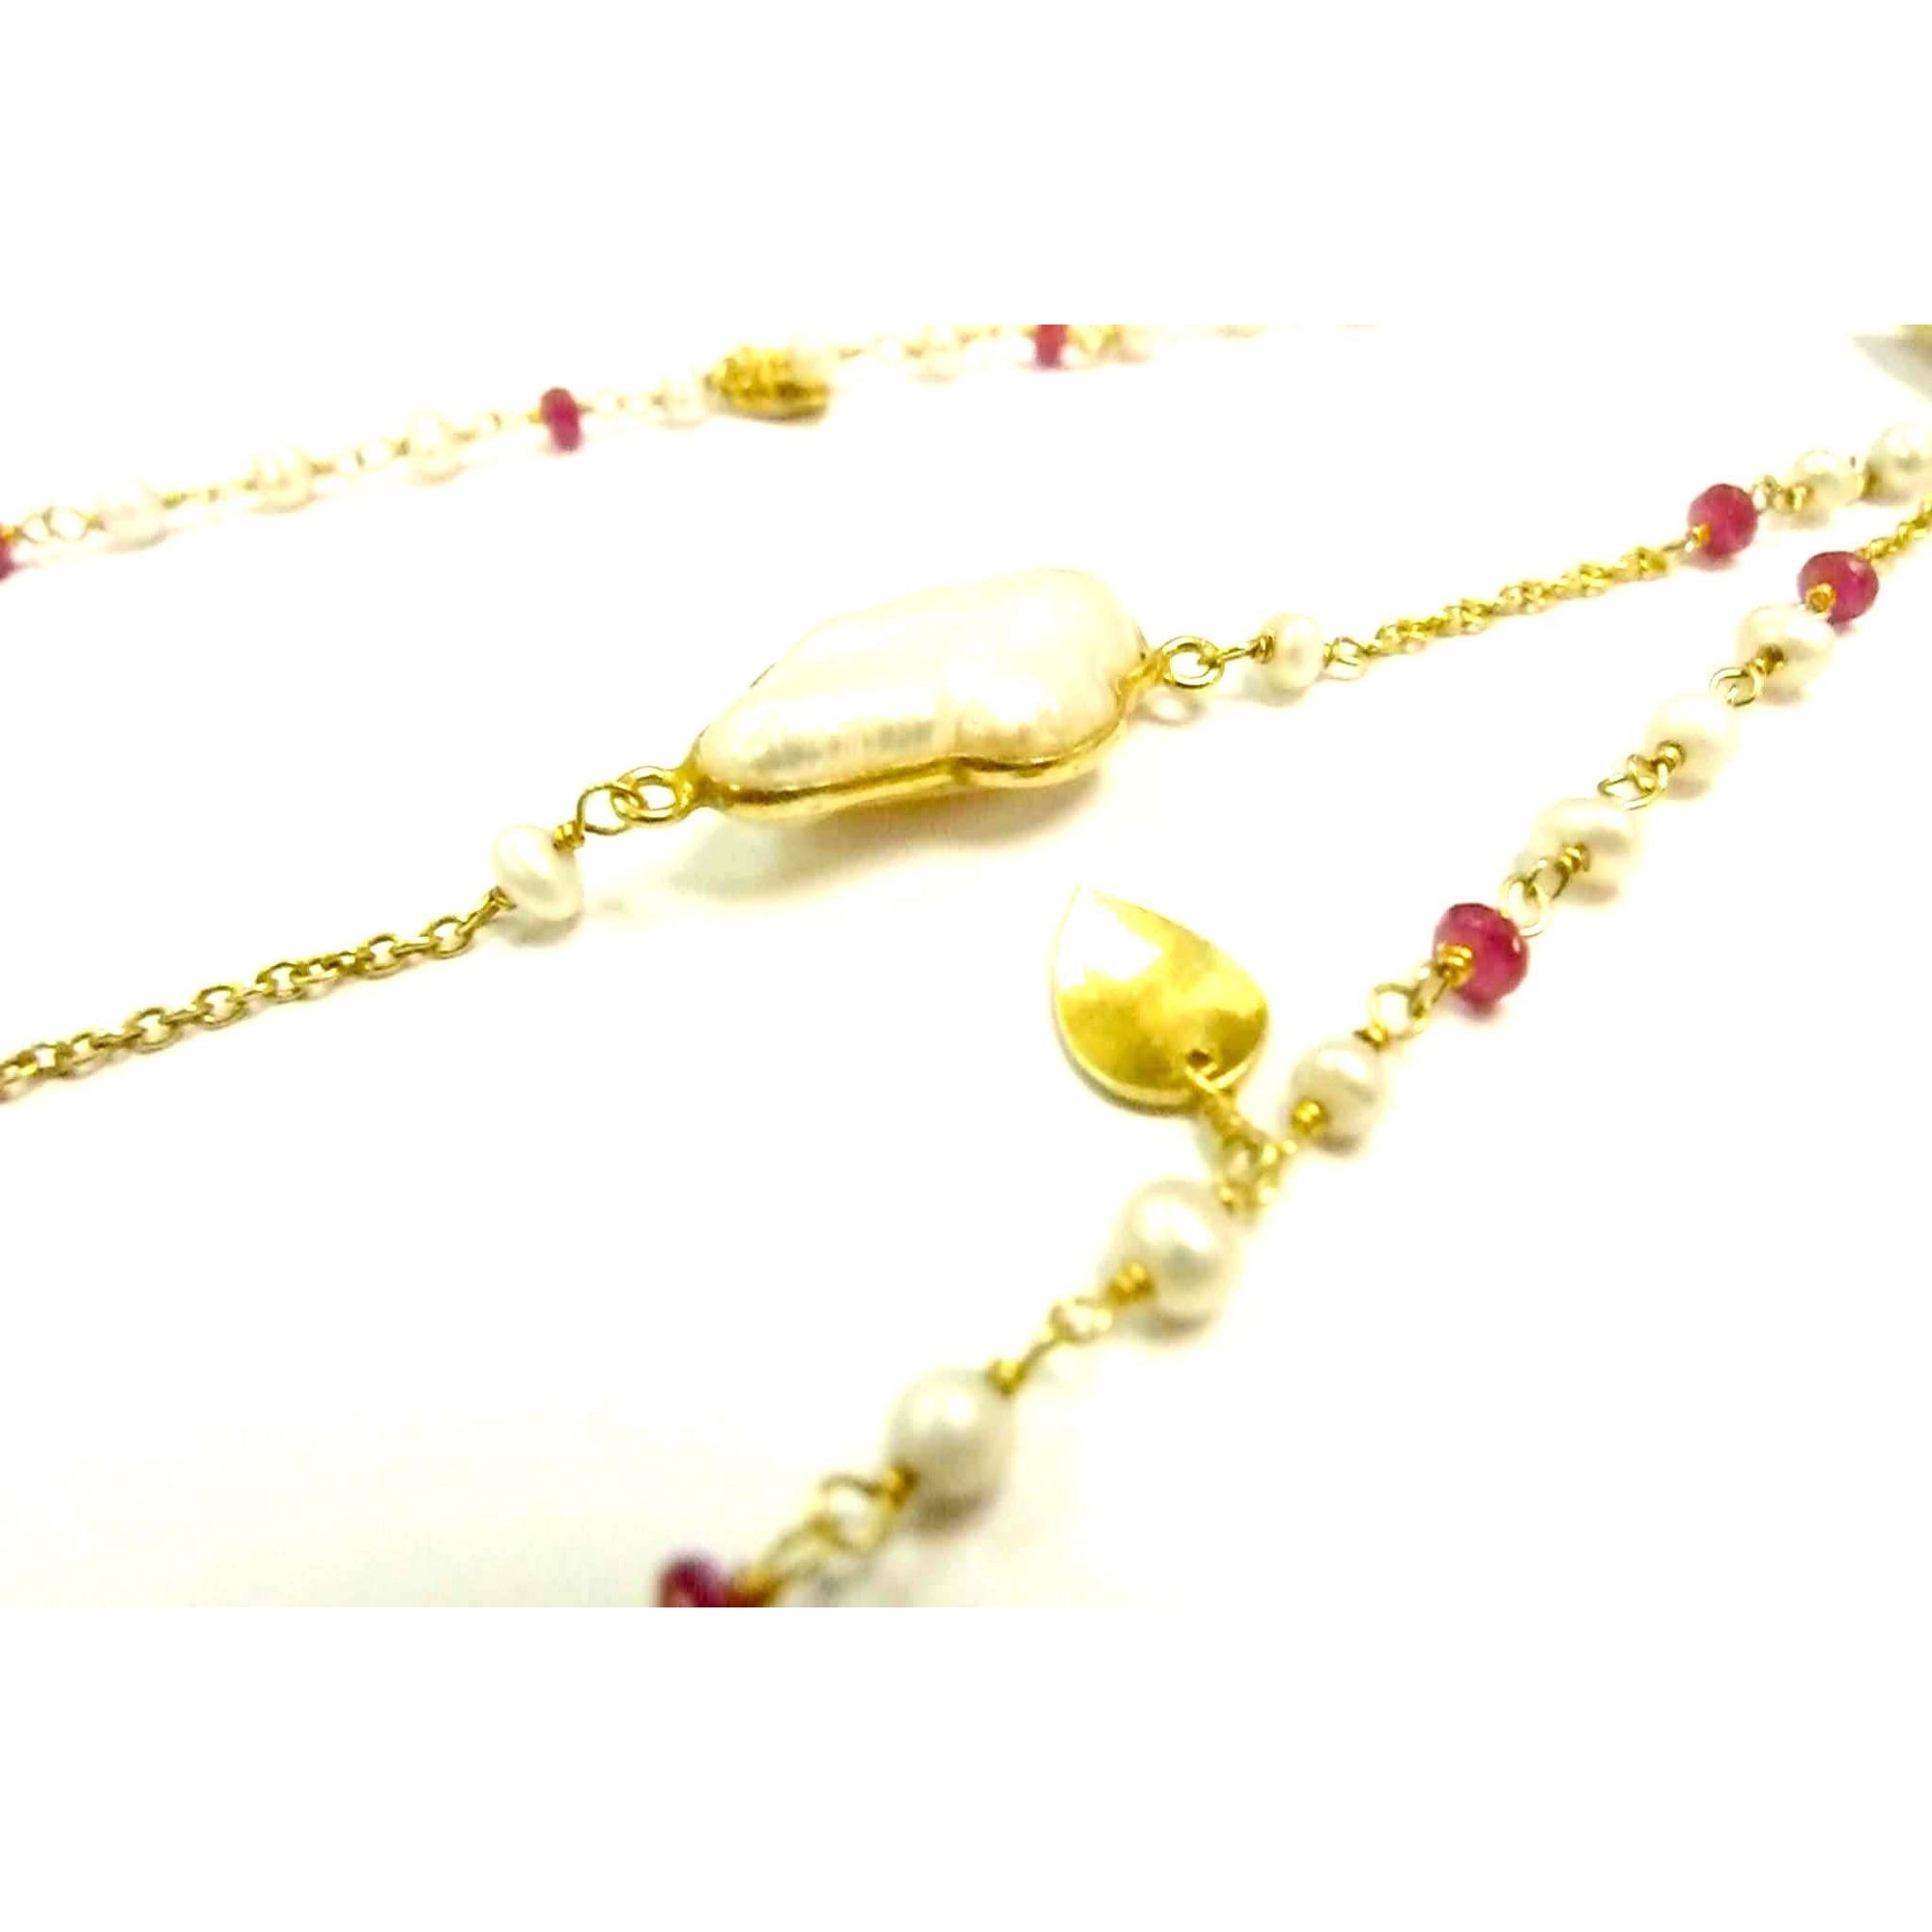 Vintage Necklace - Pearl & Rose Quartz